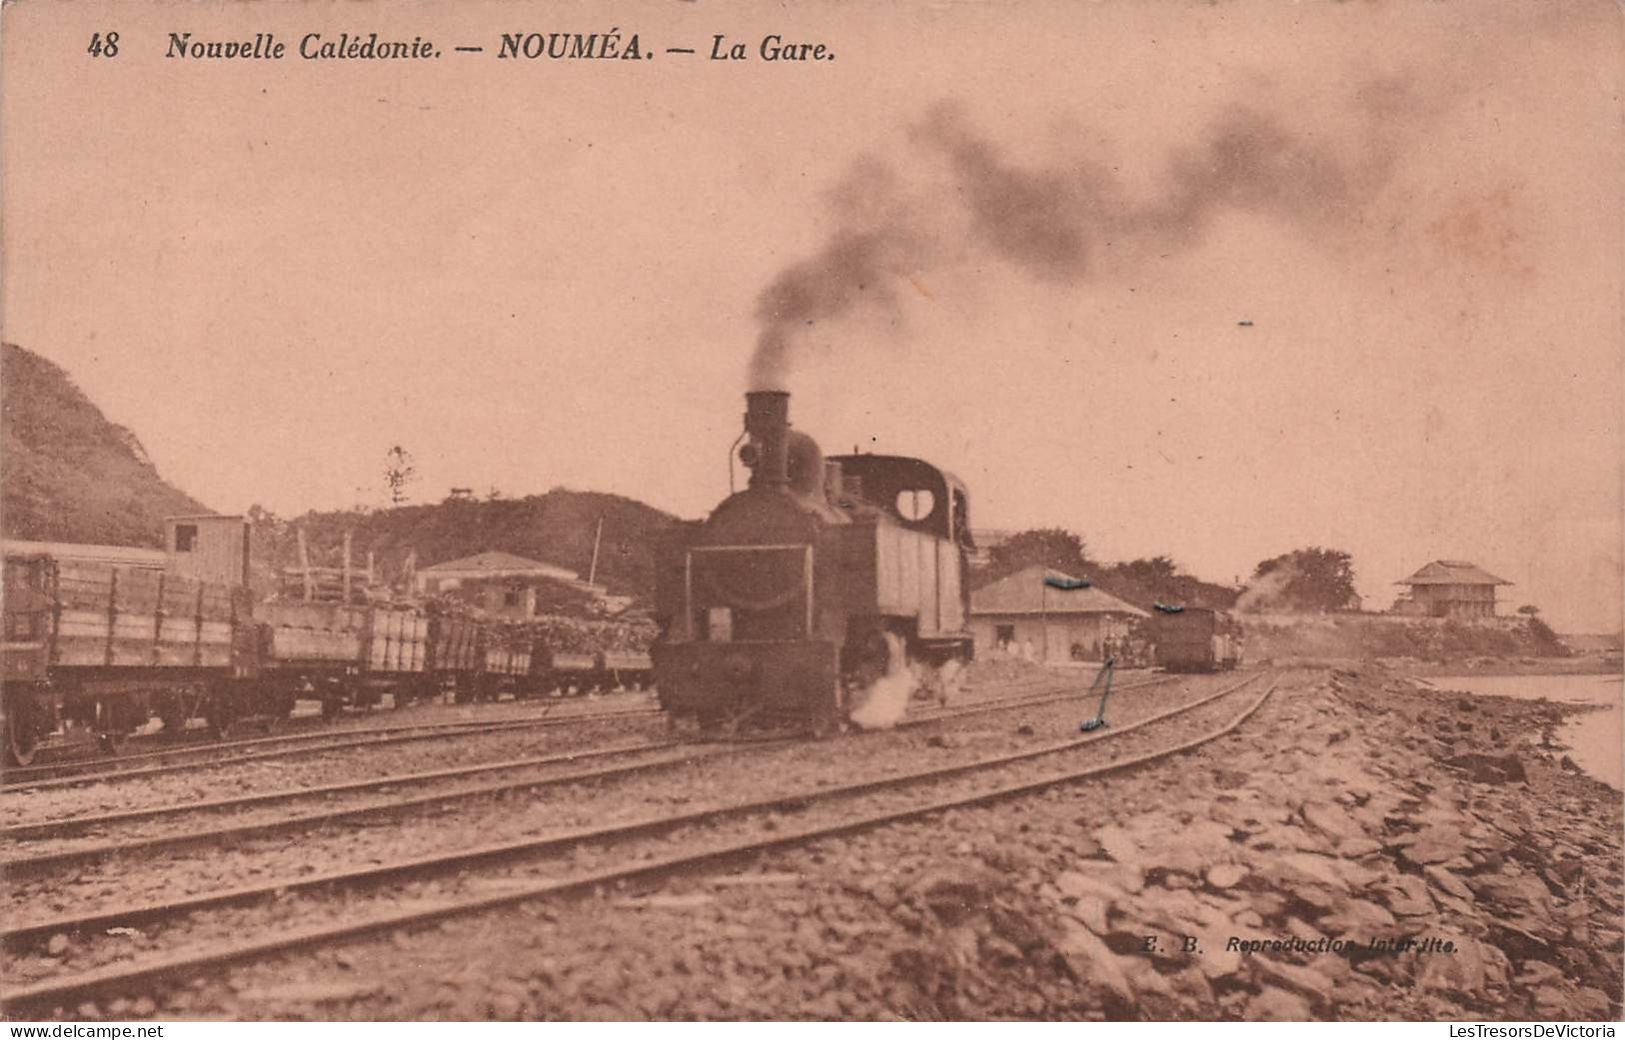 Nouvelle Calédonie - Noumea - La Gare - Train En Gare - Locomotive - Chemin De Fer - Carte Postale Ancienne - Nieuw-Caledonië